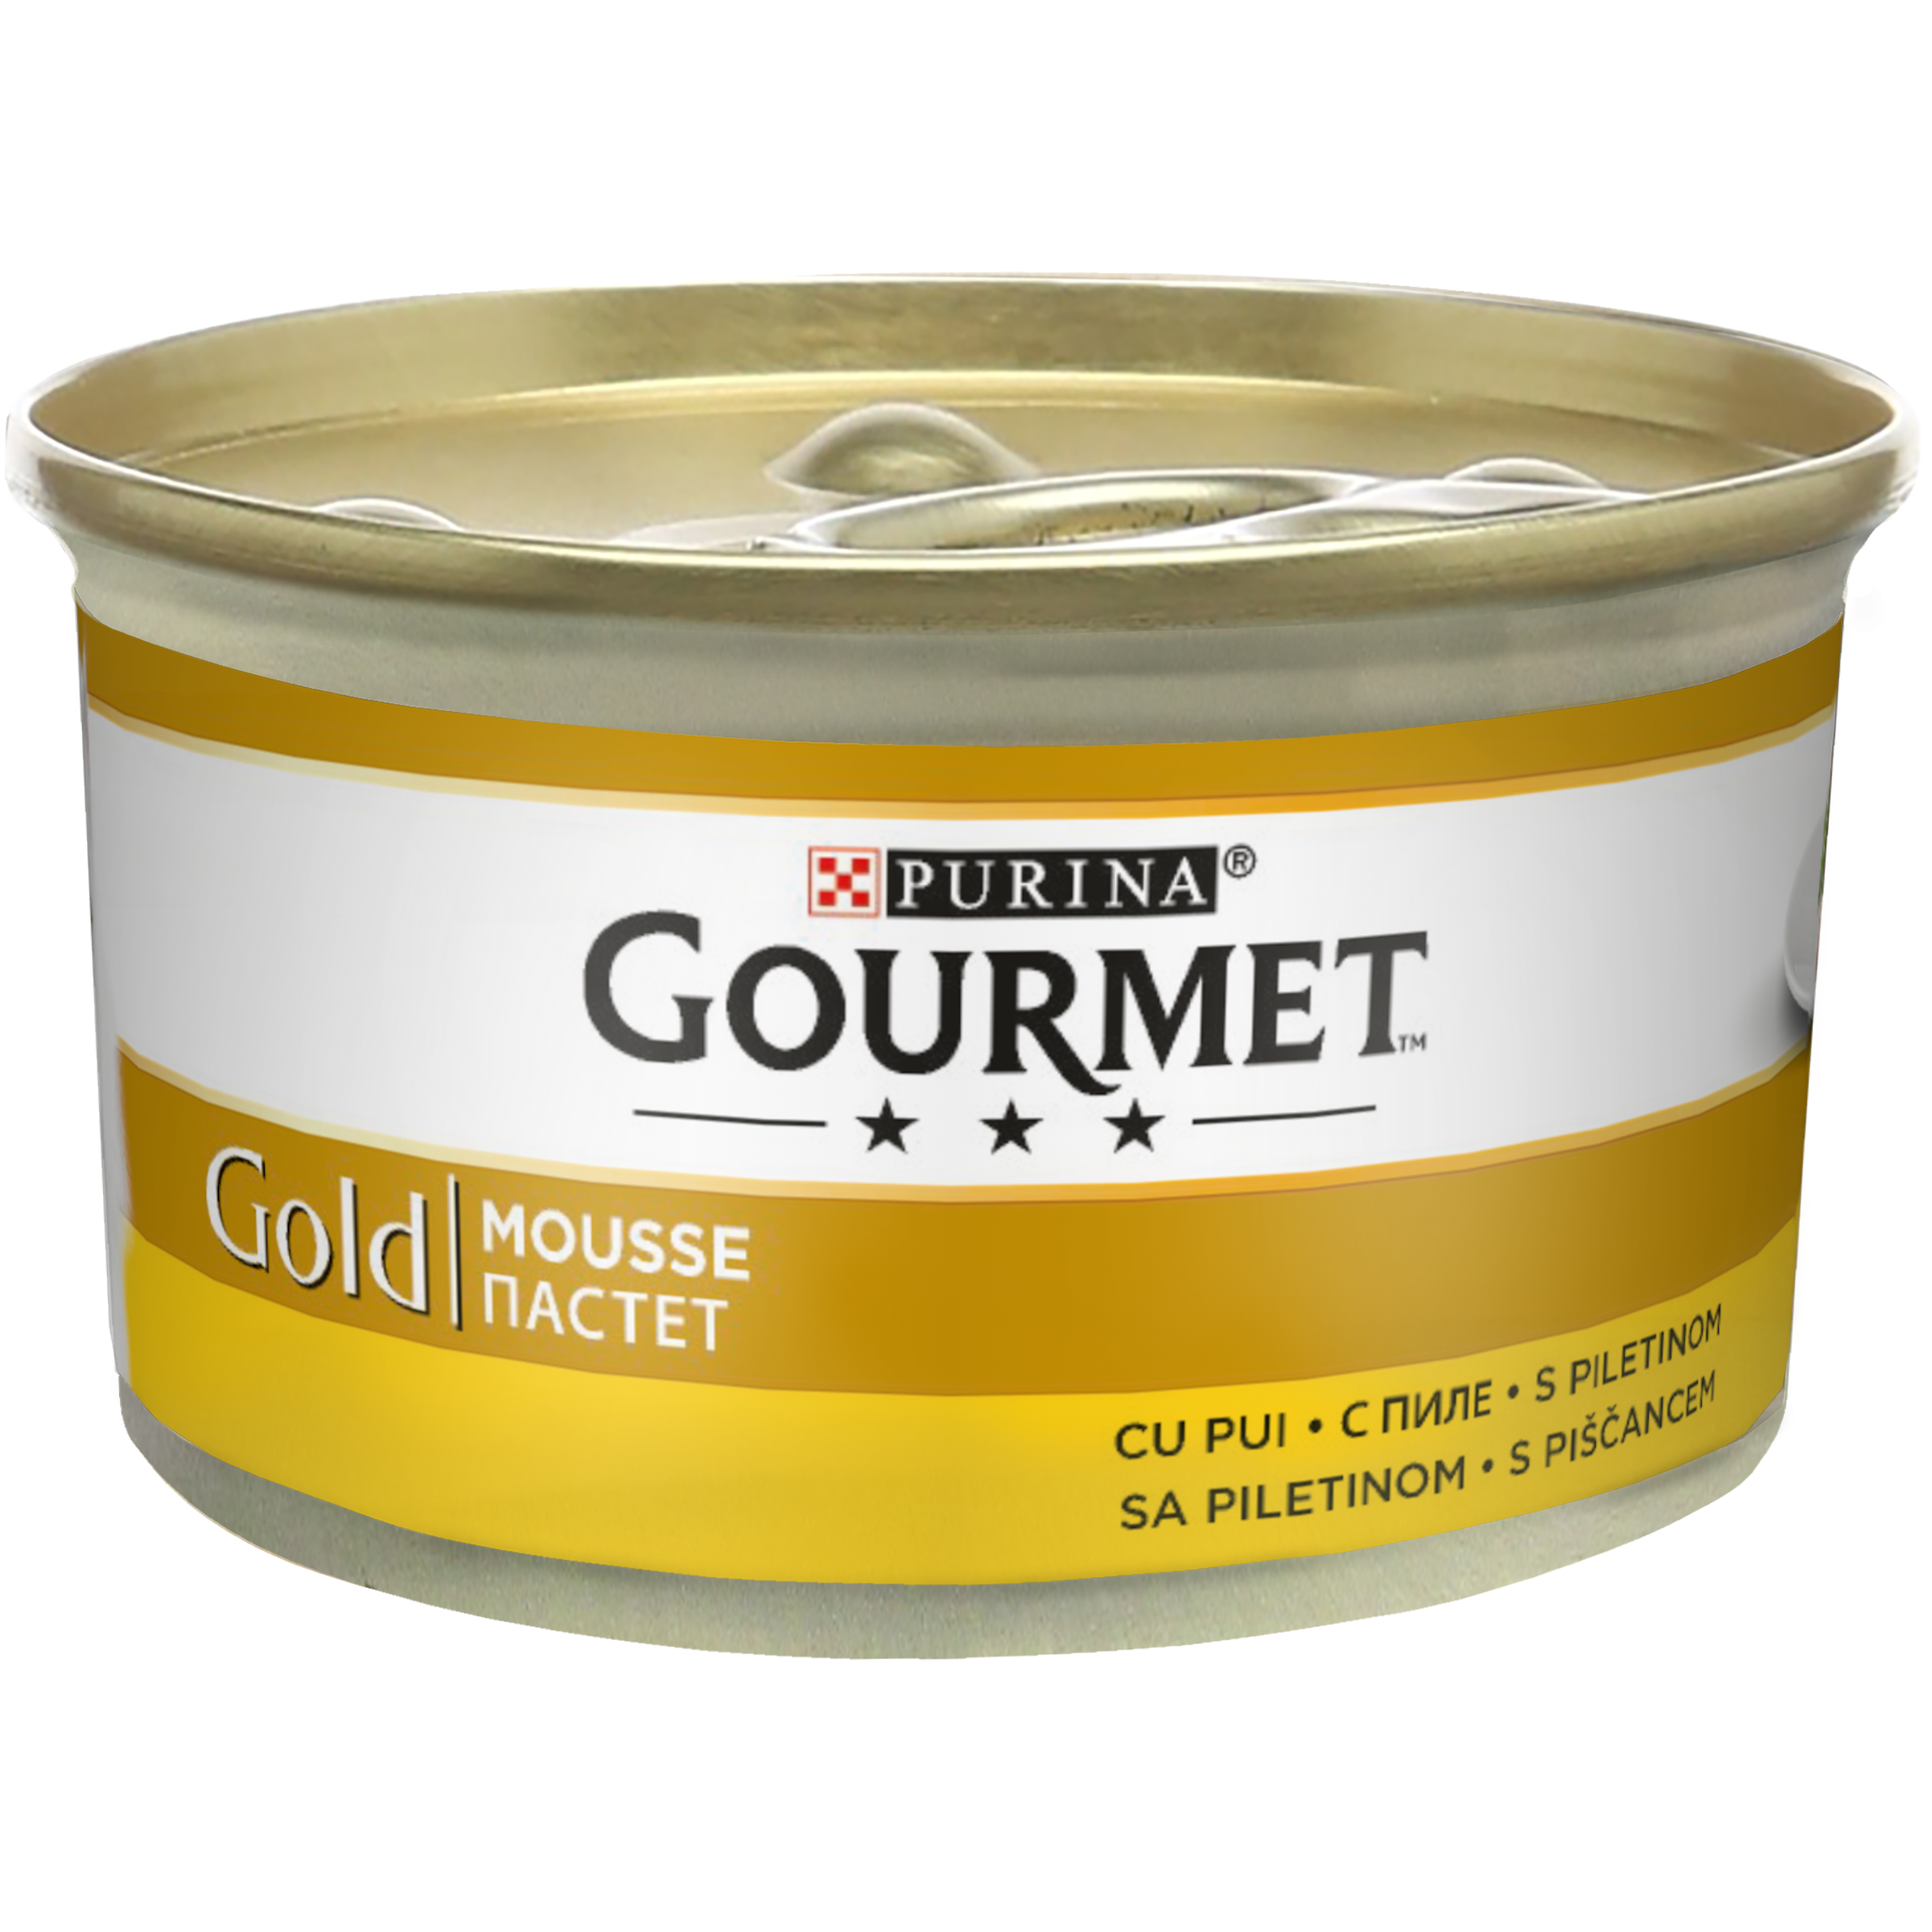 Gourmet Gold Mousse cu Pui, 85 g Gourmet